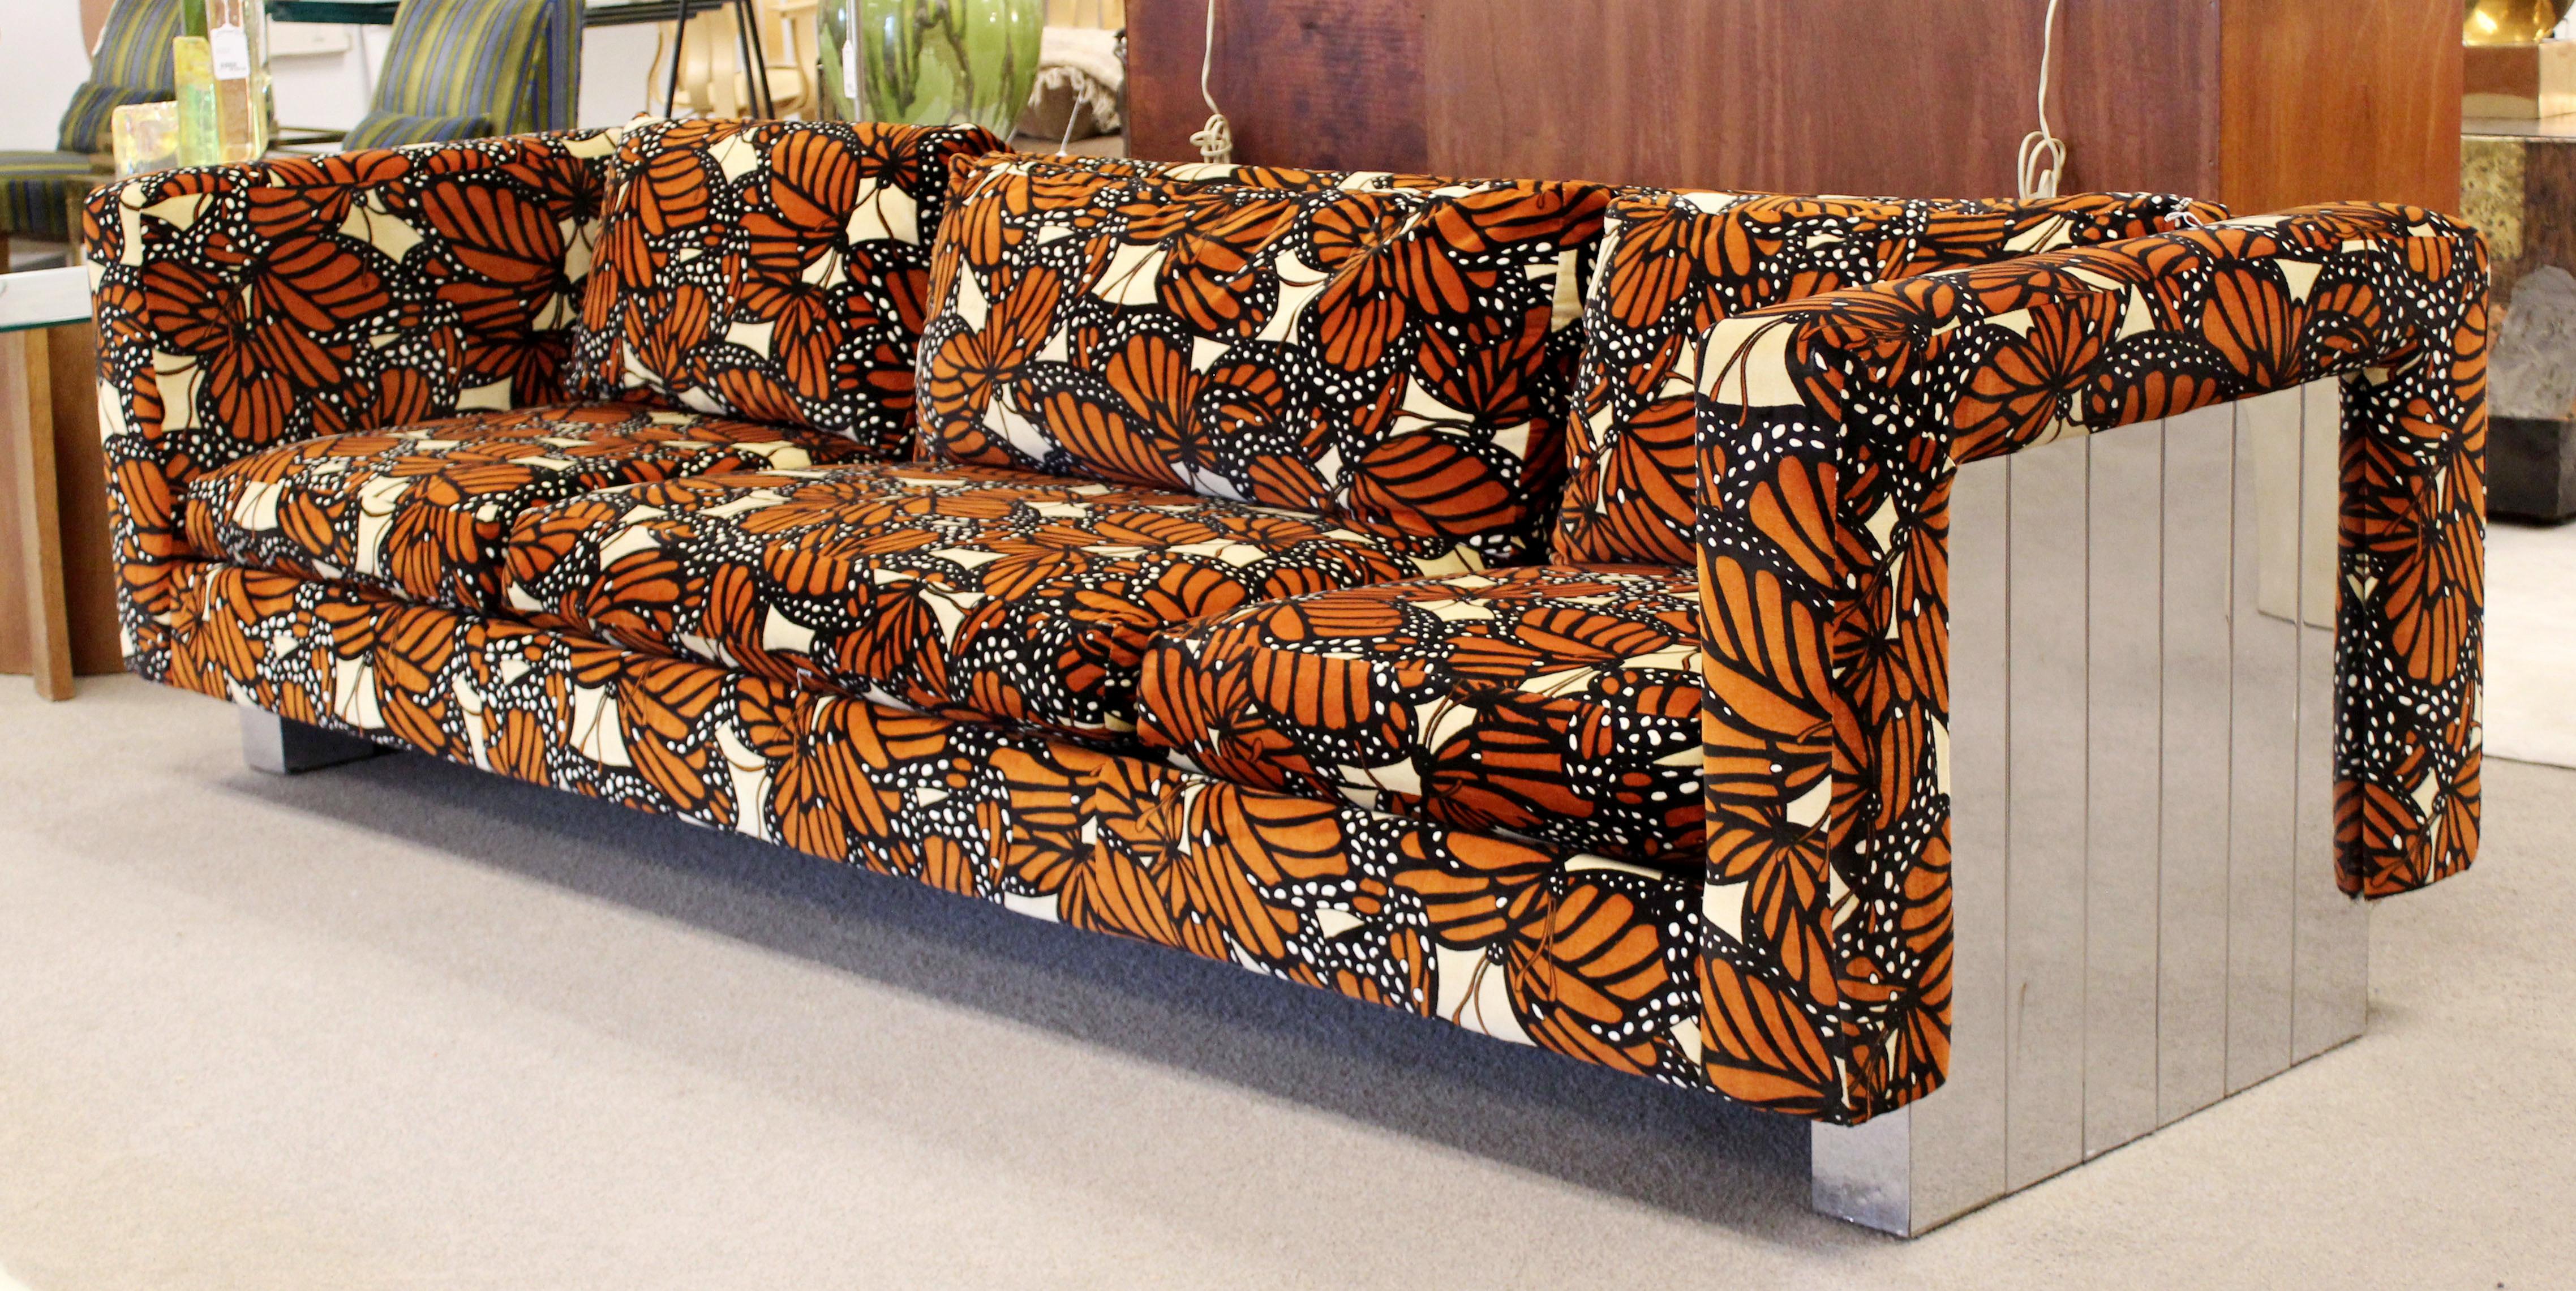 monarch sofa